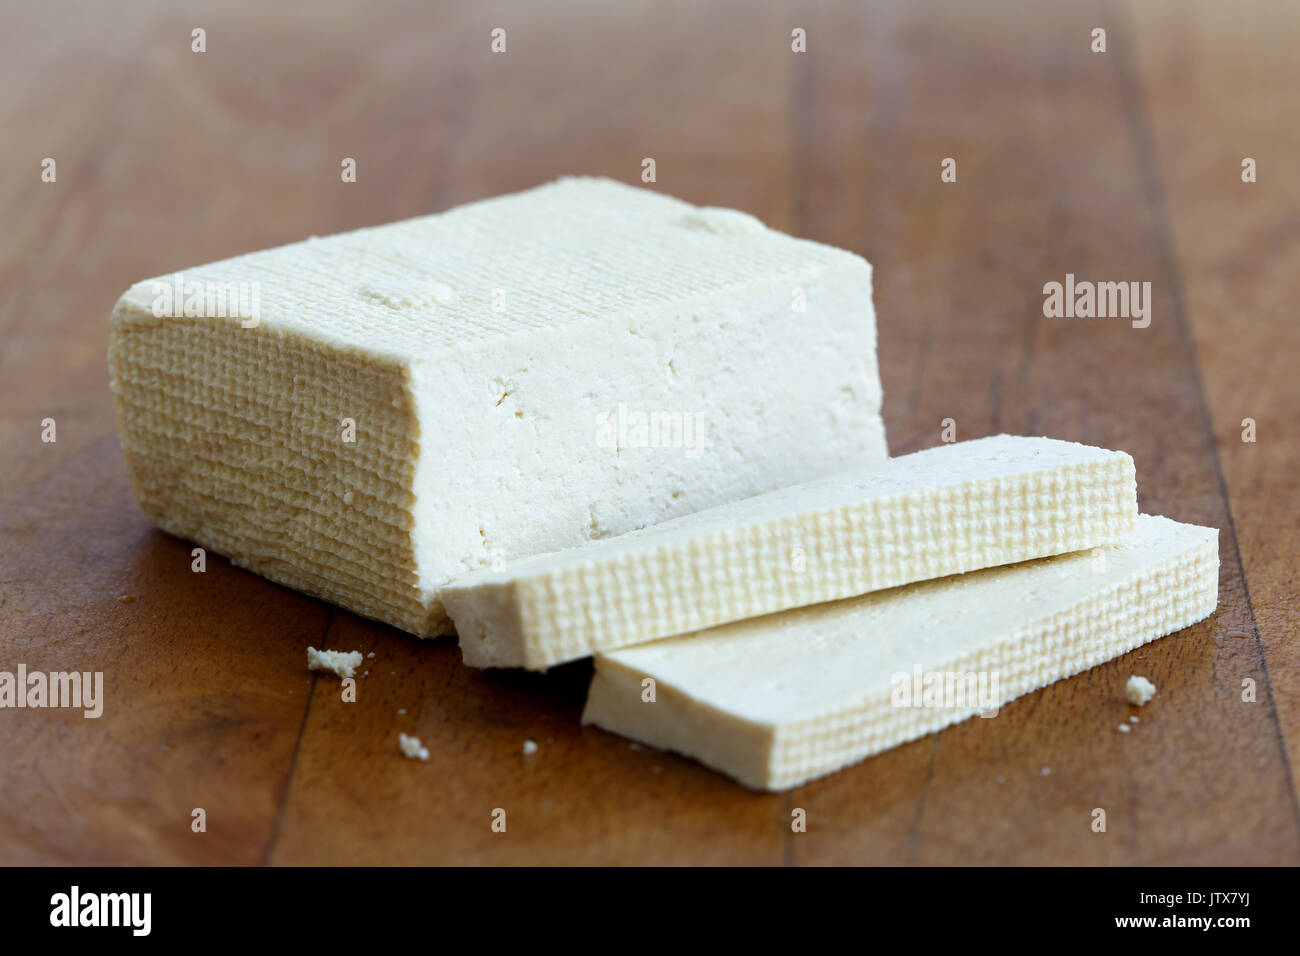 Bloc de tofu blanc et deux tranches de tofu sur planche en bois. Banque D'Images